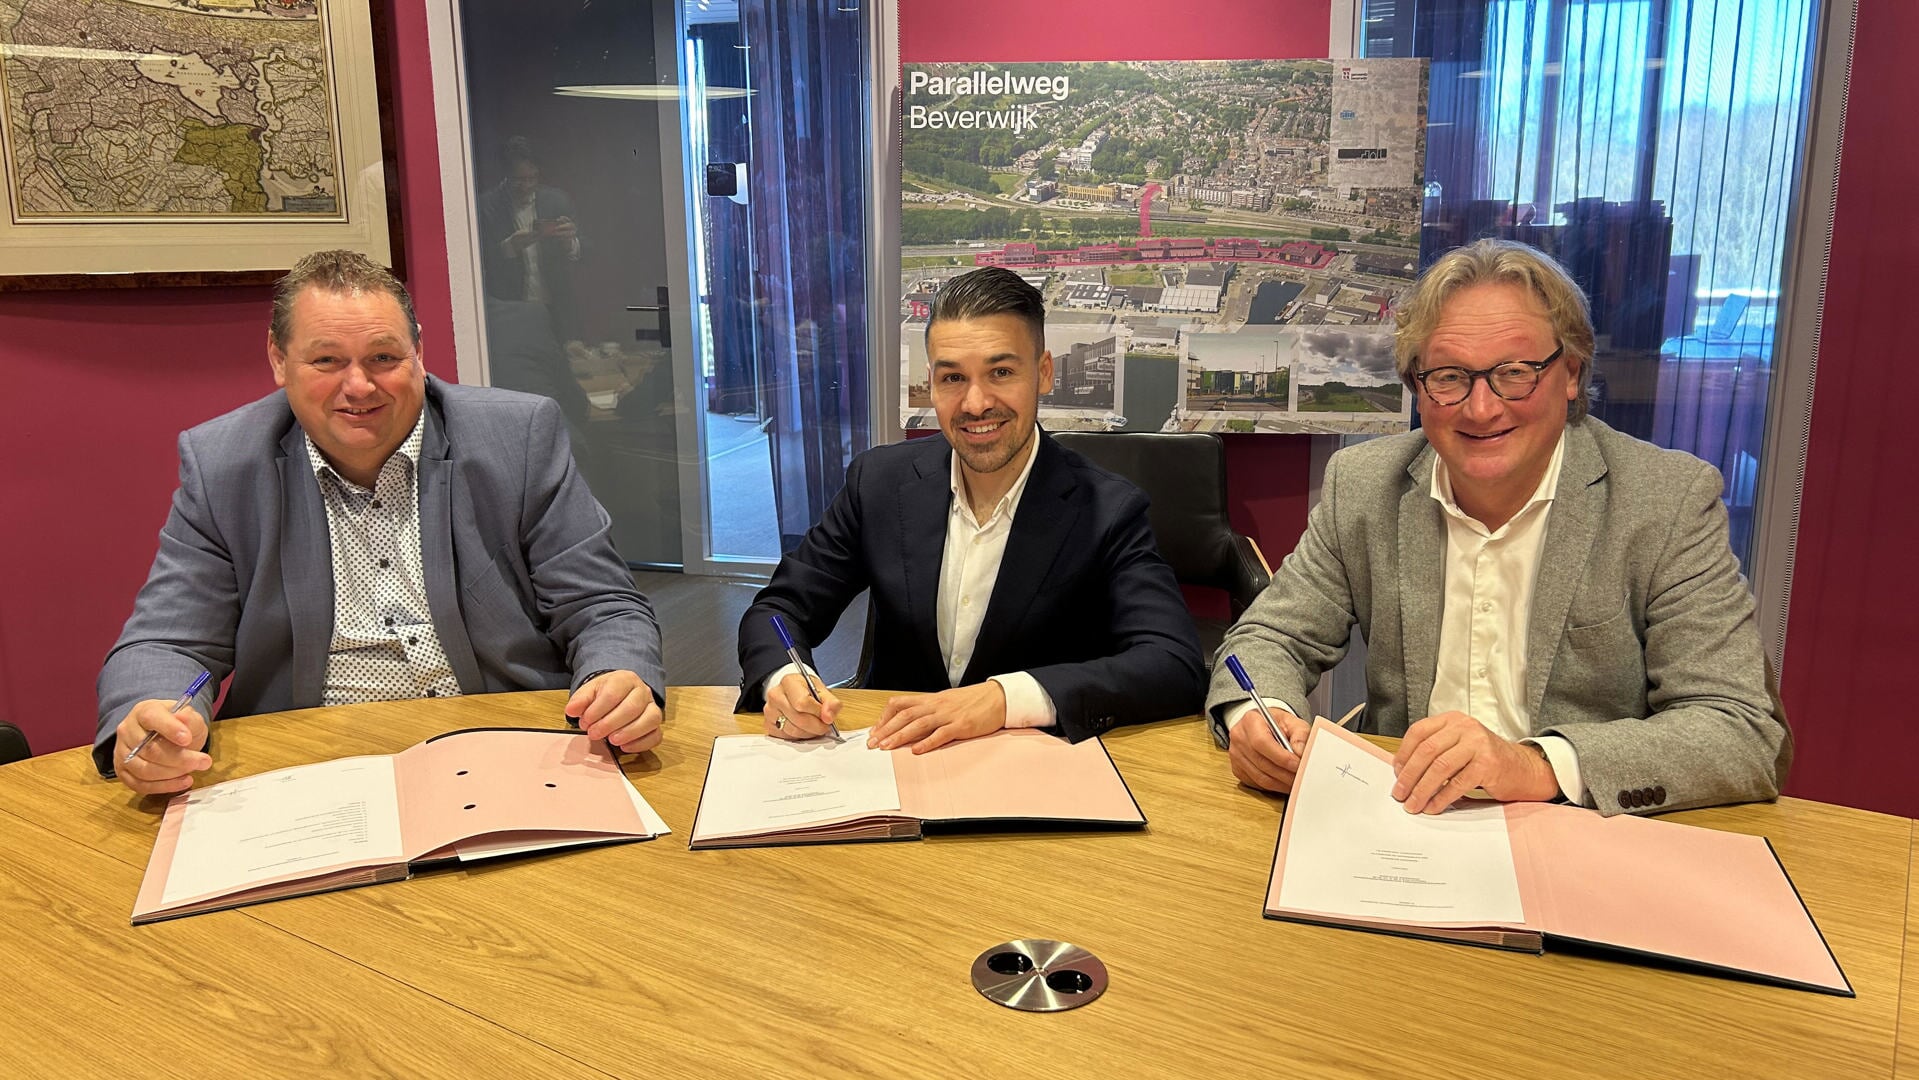 De ondertekening van de overeenkomst door Maurits Kuppens (Opportunity Vastgoed), Jeroen Marsman (SBB) en wethouder Ali Bal.